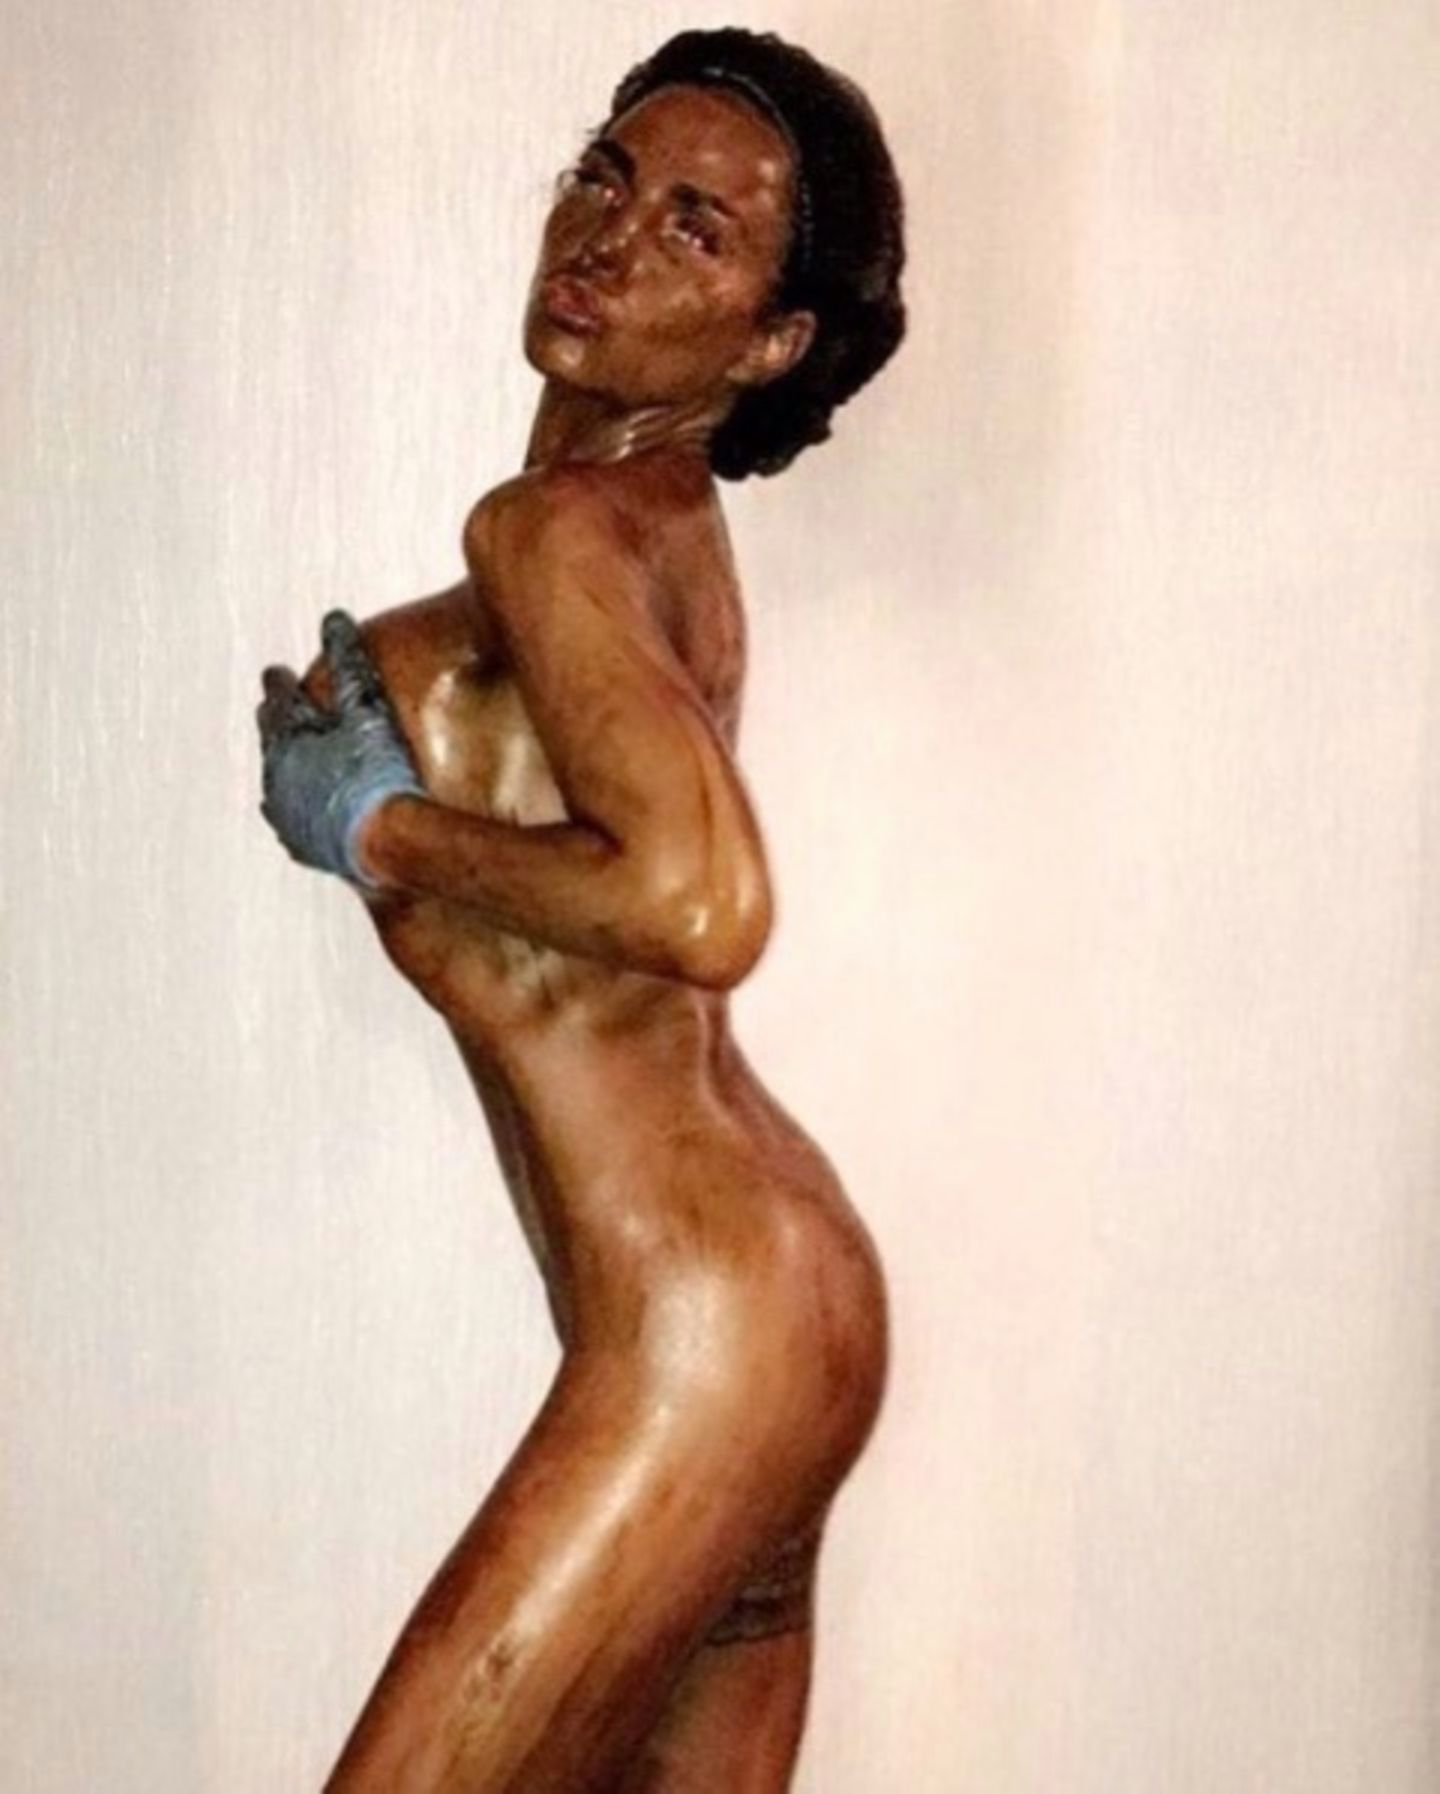 Katie Price postet auf Instagram ihre absolute Fake-Tan-Panne: "Oh Gott, ich habe letzte Nacht diesen neuen Selbstbräuner benutzt. Jetzt muss ich duschen und hoffe, dass es noch okay wird", schreibt sie zu dem Foto. Welches Beauty-Malheur sie jedoch nicht erwähnt: Mit Photoshop hat sie ihren Po noch einmal korrigiert, am Steißbein jedoch eine verräterische Delle hinterlassen.